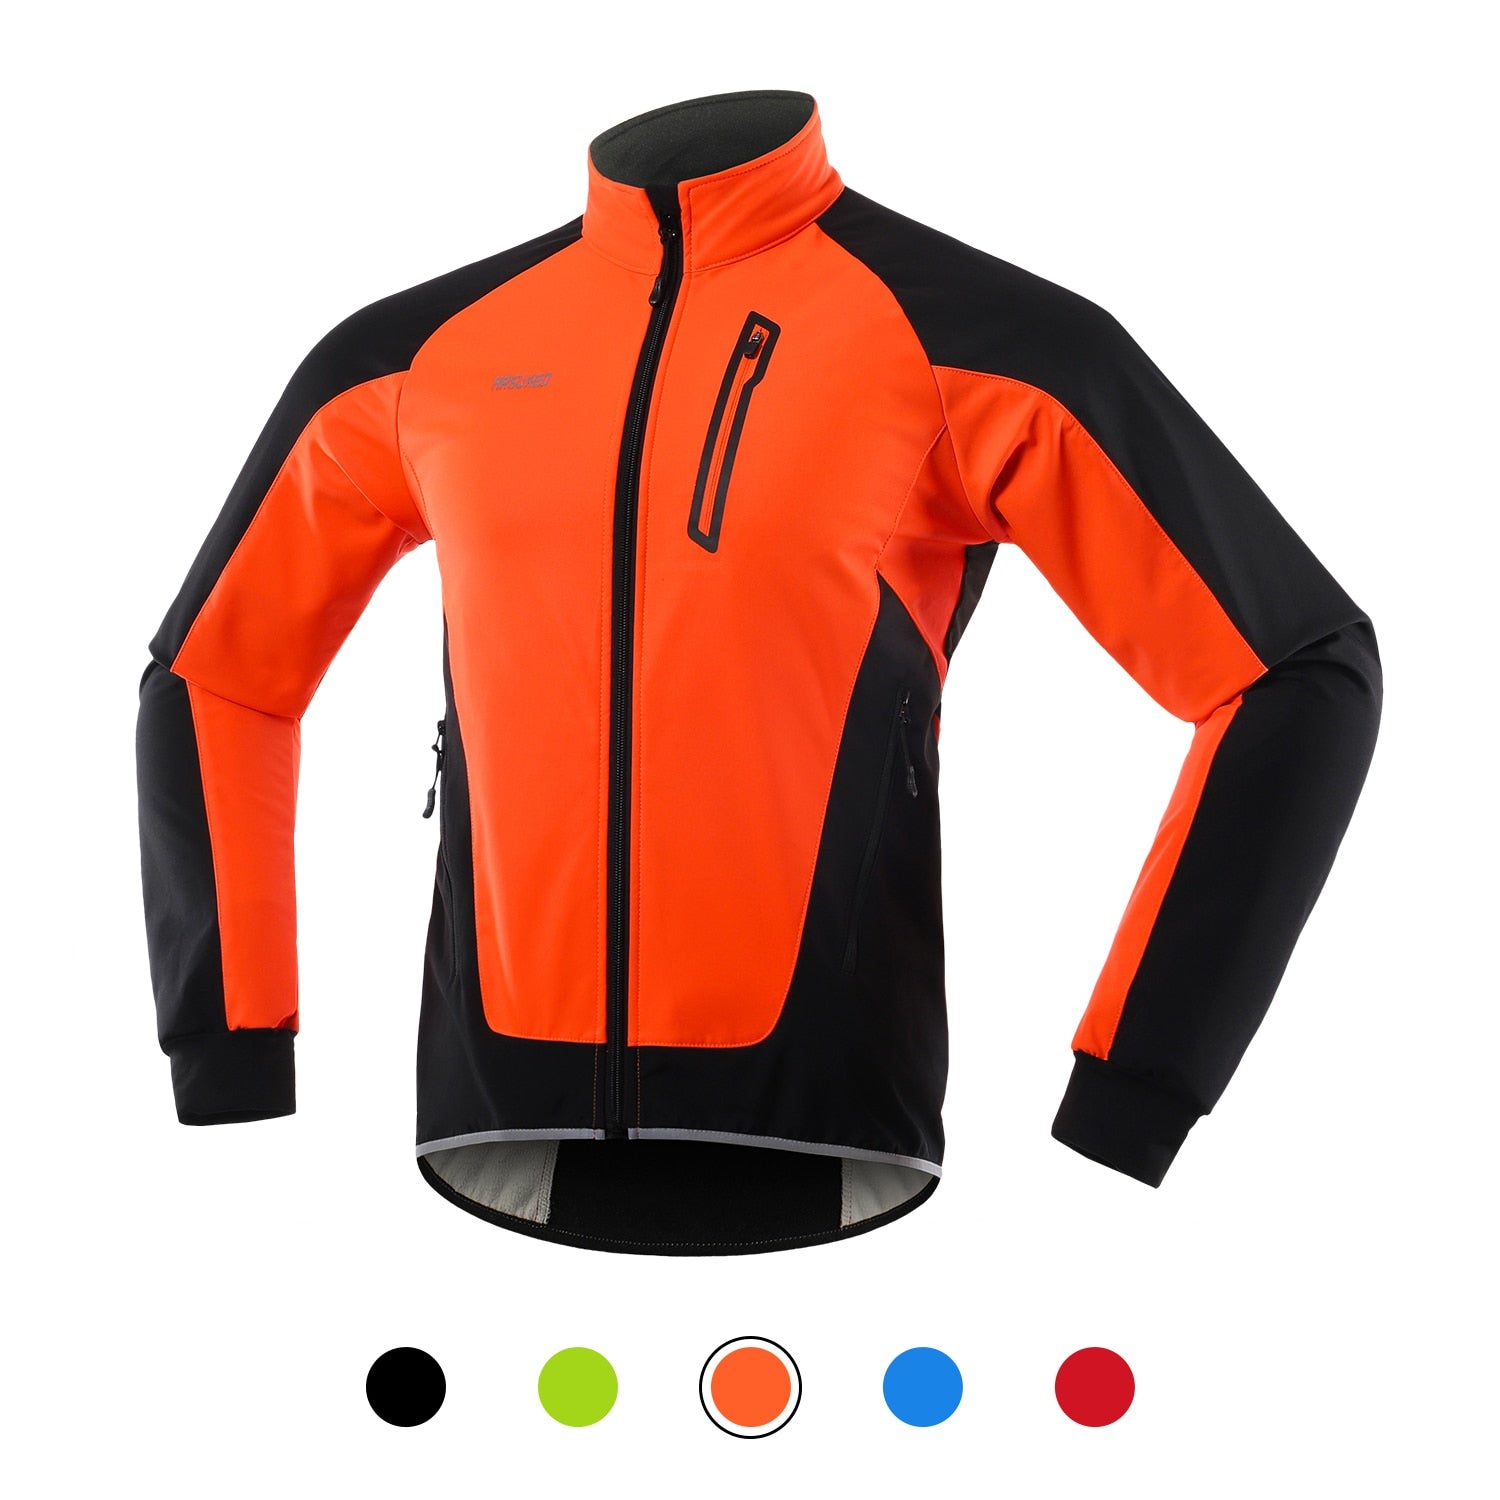 ARSUXEO Hi-Viz Men's Winter Waterproof/Windproof Thermal Fleece-lined Cycling Jacket - Reflective/Orange/Black